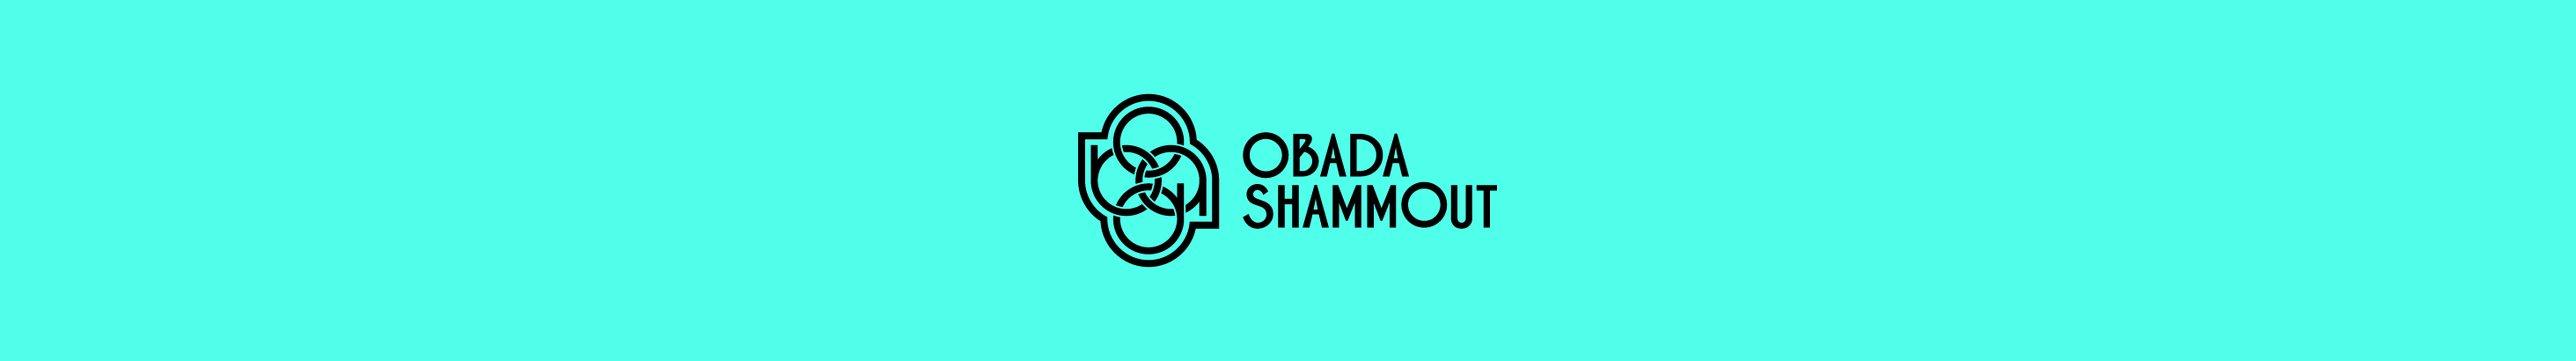 Obada Shammout 的个人资料横幅